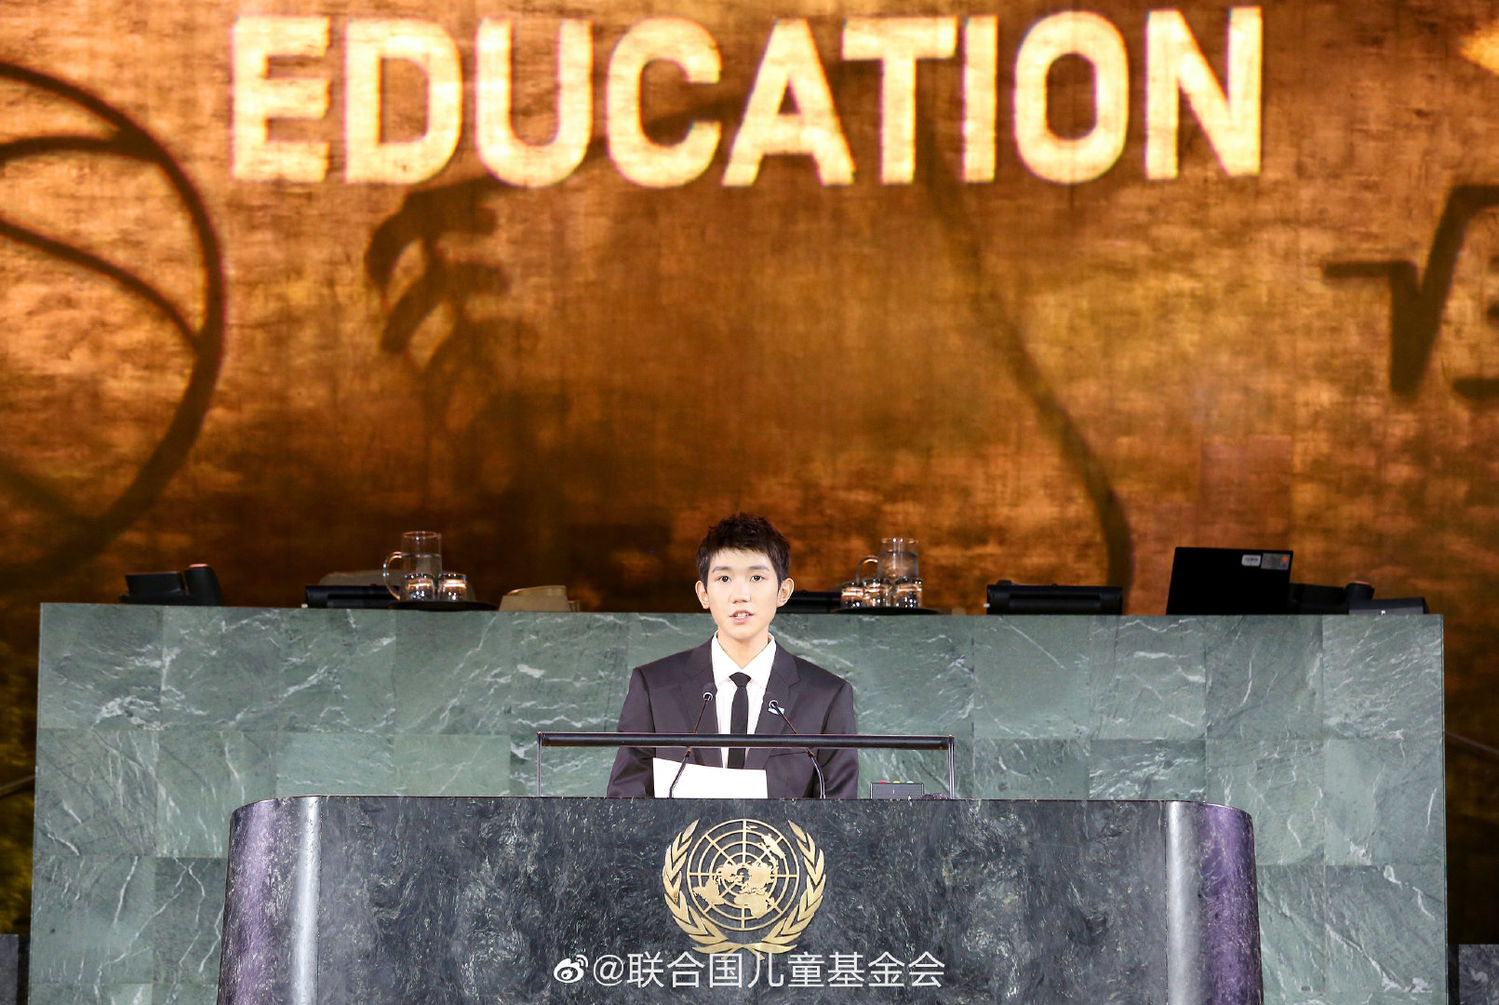 王源联合国大会中文演讲 携手共创儿童的未来